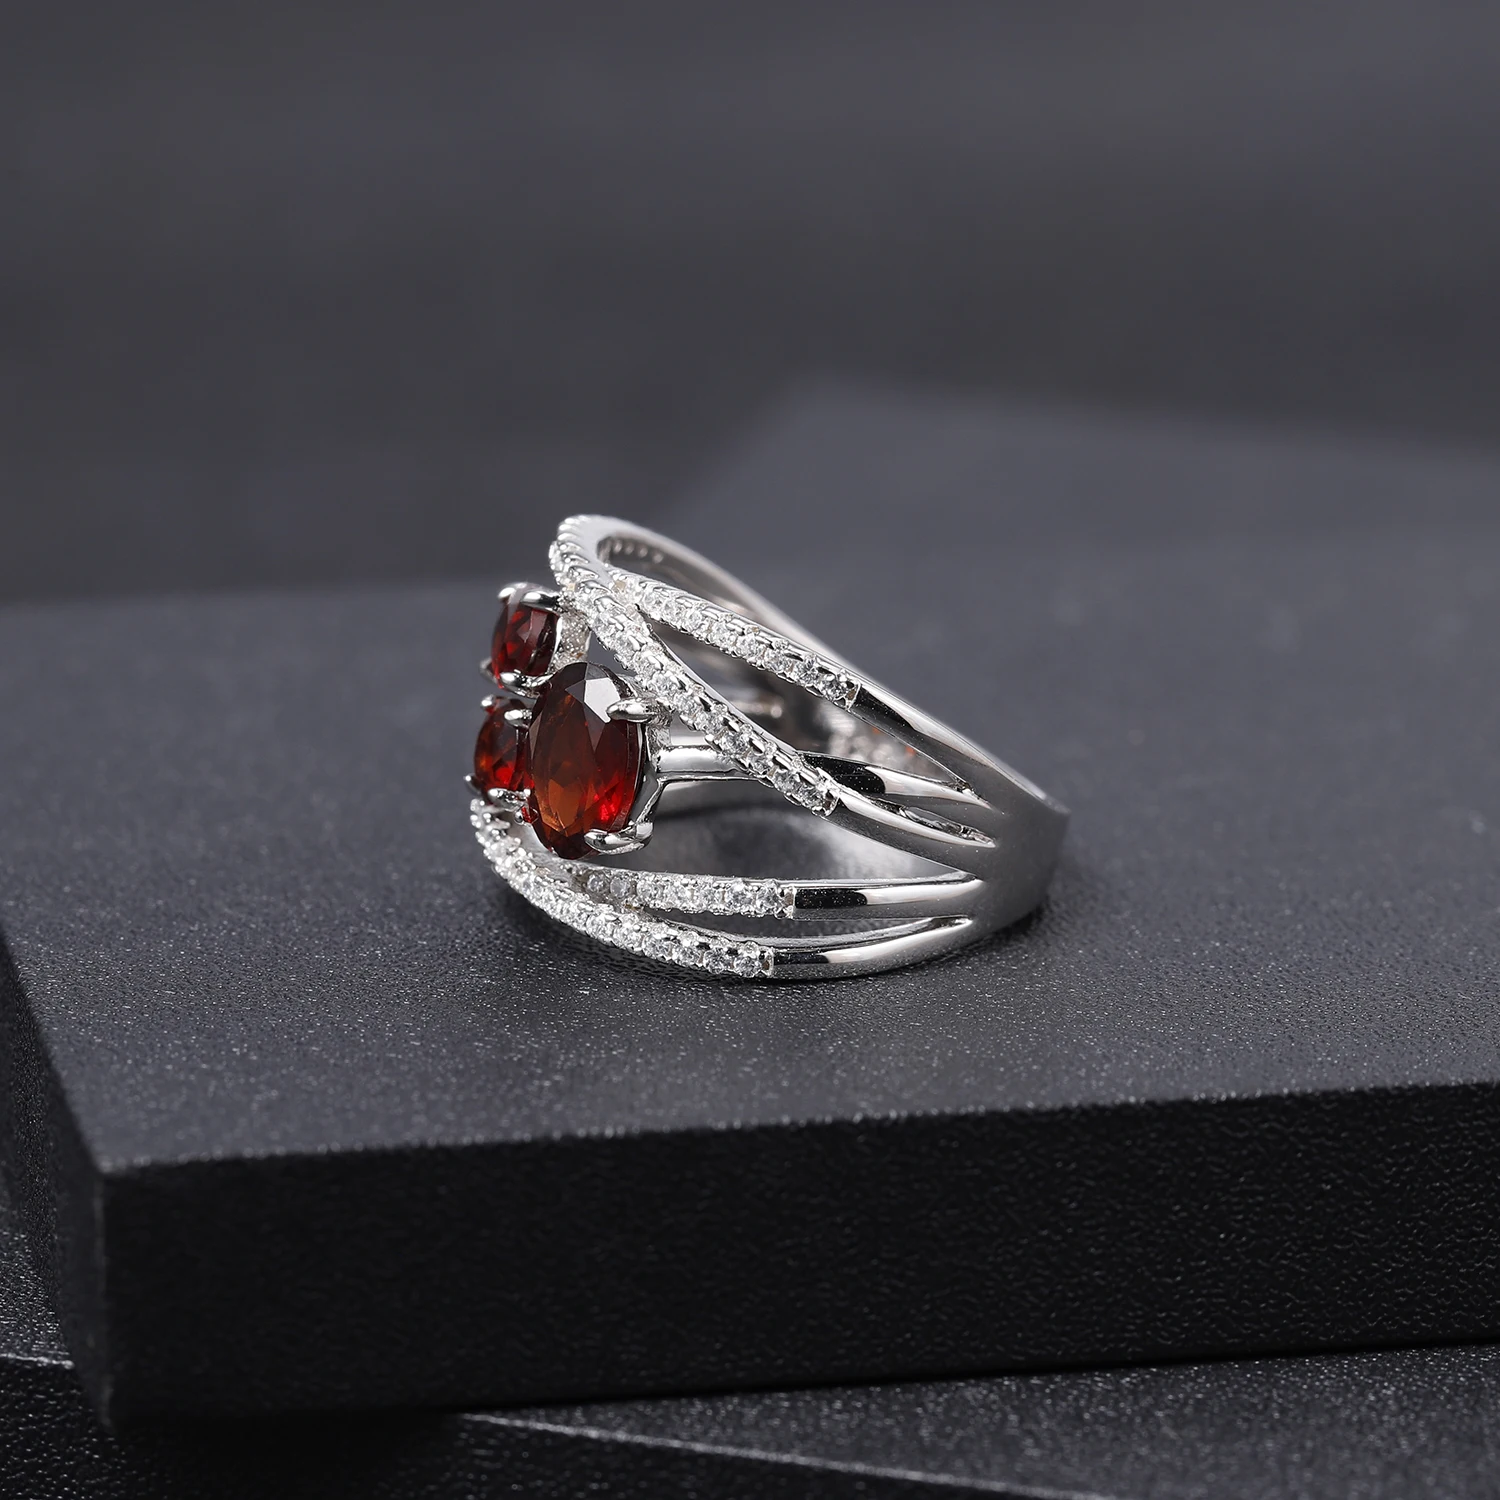 GEM'S BALLET, 1.87Ct, натуральный красный гранат, кольца на палец, 925 пробы, серебро, крест-накрест, ПАВЕ, драгоценный камень, кольцо для женщин, хорошее ювелирное изделие